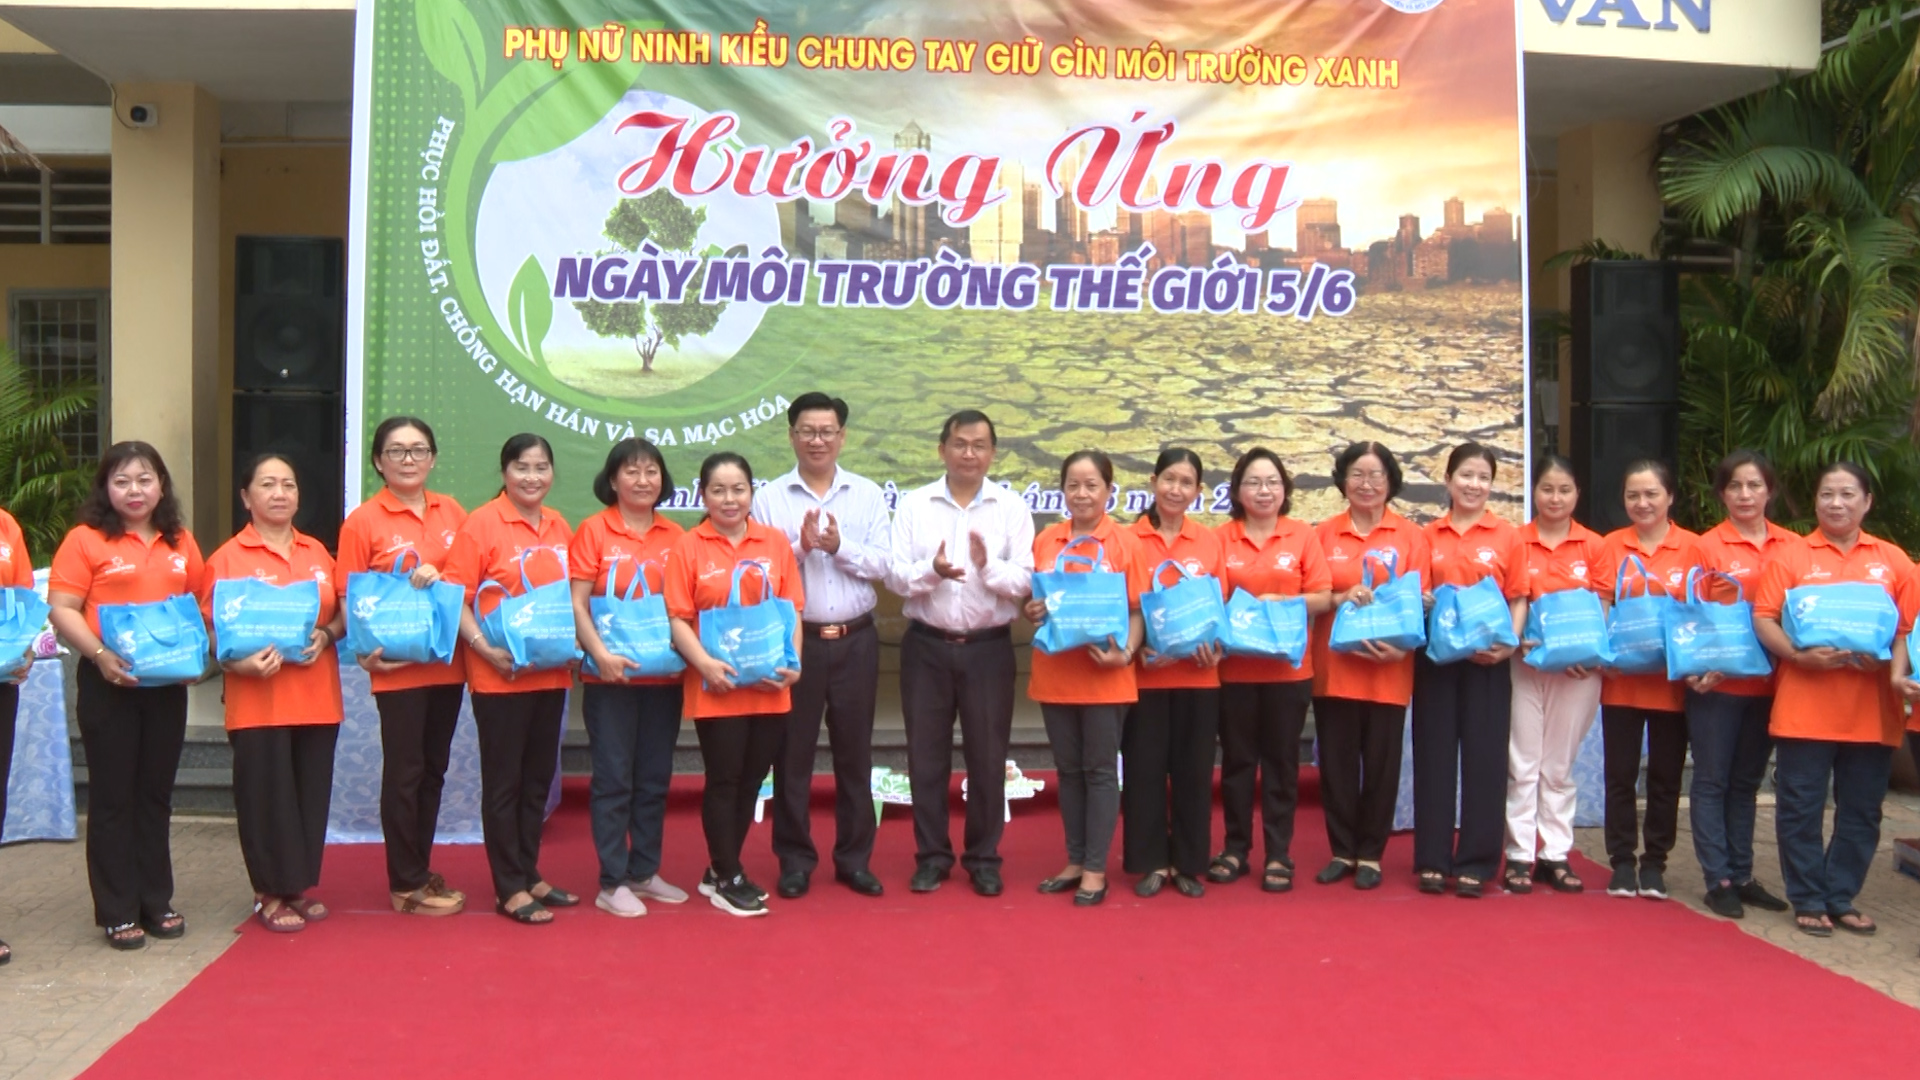 Hình 3: Đại diện lãnh đạo quận Ninh Kiều tặng quà cho các chị em Hội Liên hiệp Phụ nữ quận Ninh Kiều